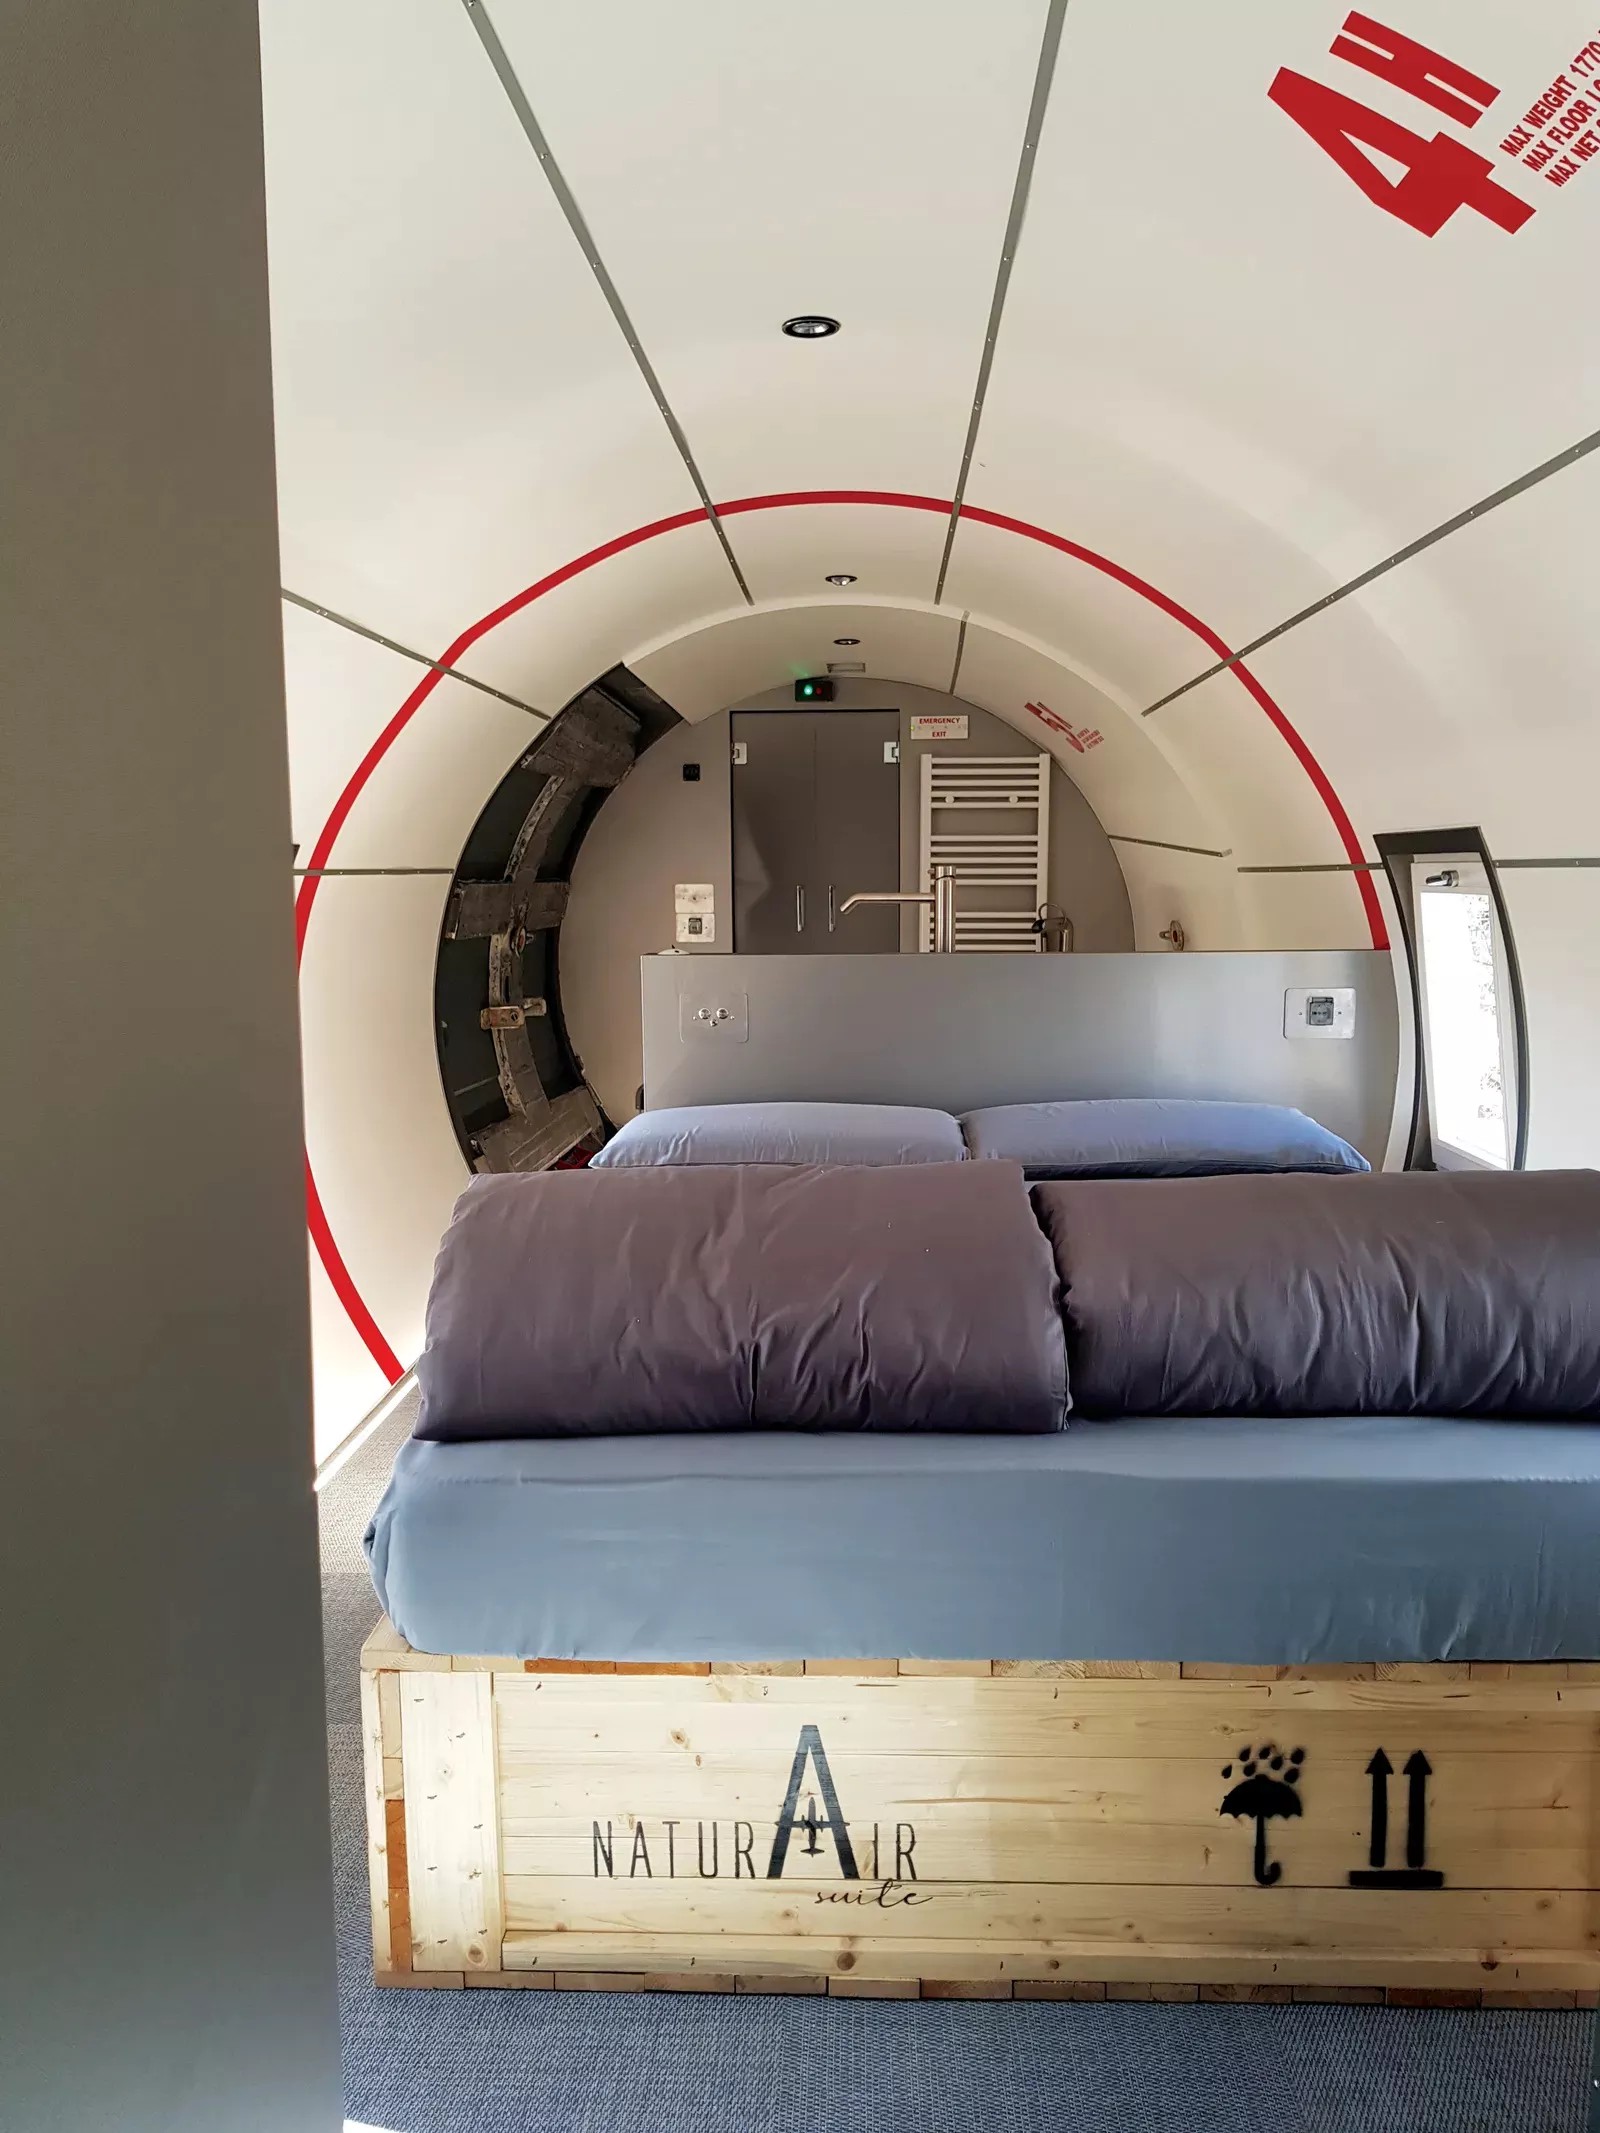 Avião aposentado vira hospedagem de luxo em acampamento na Itália (Foto: Reprodução/ Naturooms)